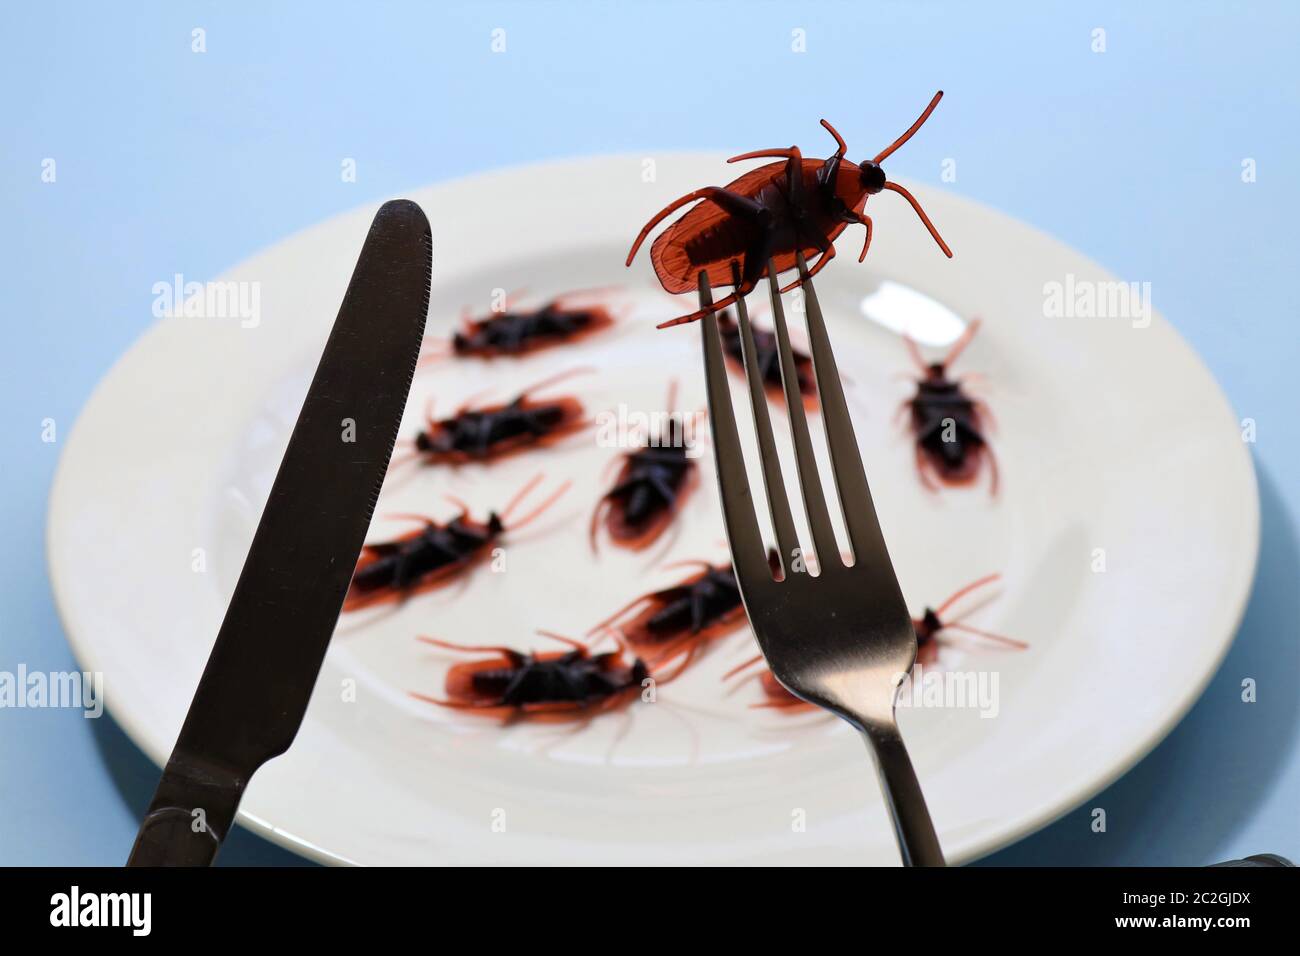 Insekten als Nahrung oder essbare Insekten sind Insektenarten, die für den menschlichen Verzehr entweder ganz oder als Zutat in verarbeiteten Lebensmitteln verwendet werden. Stockfoto